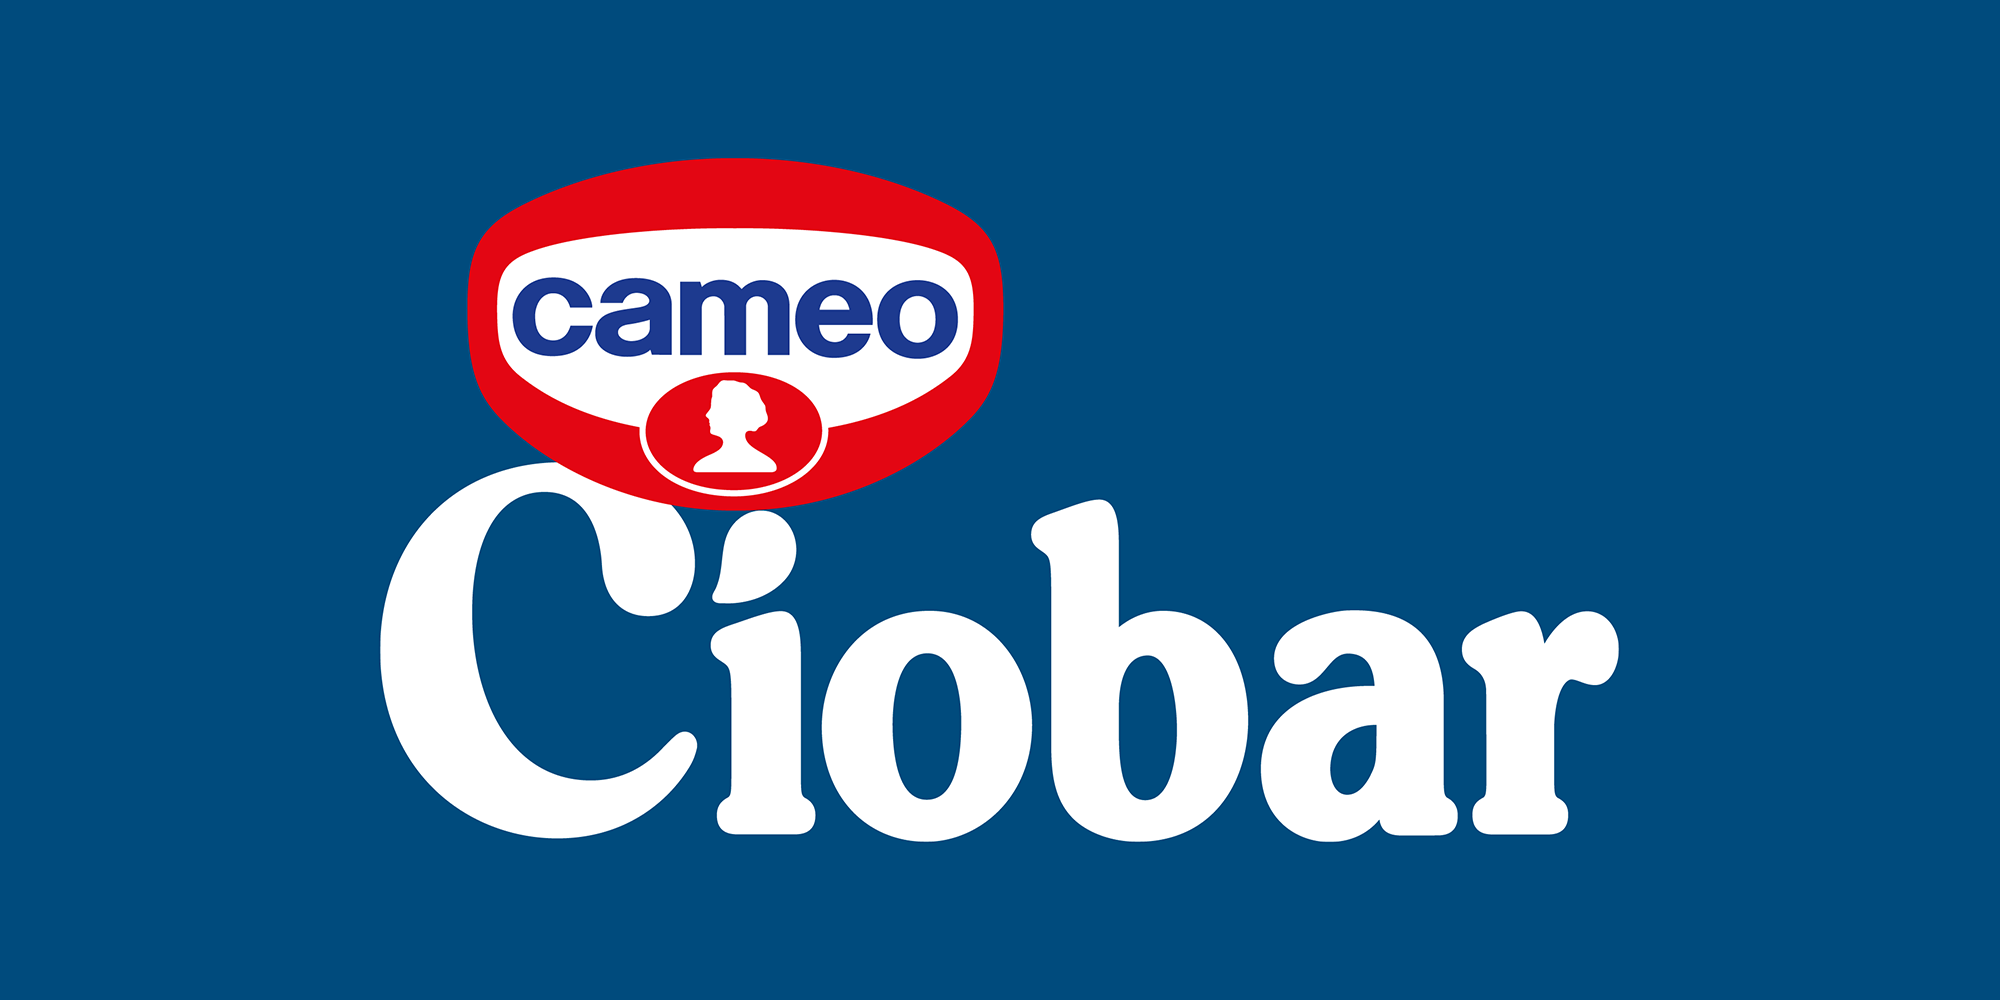 Ciobar Logo